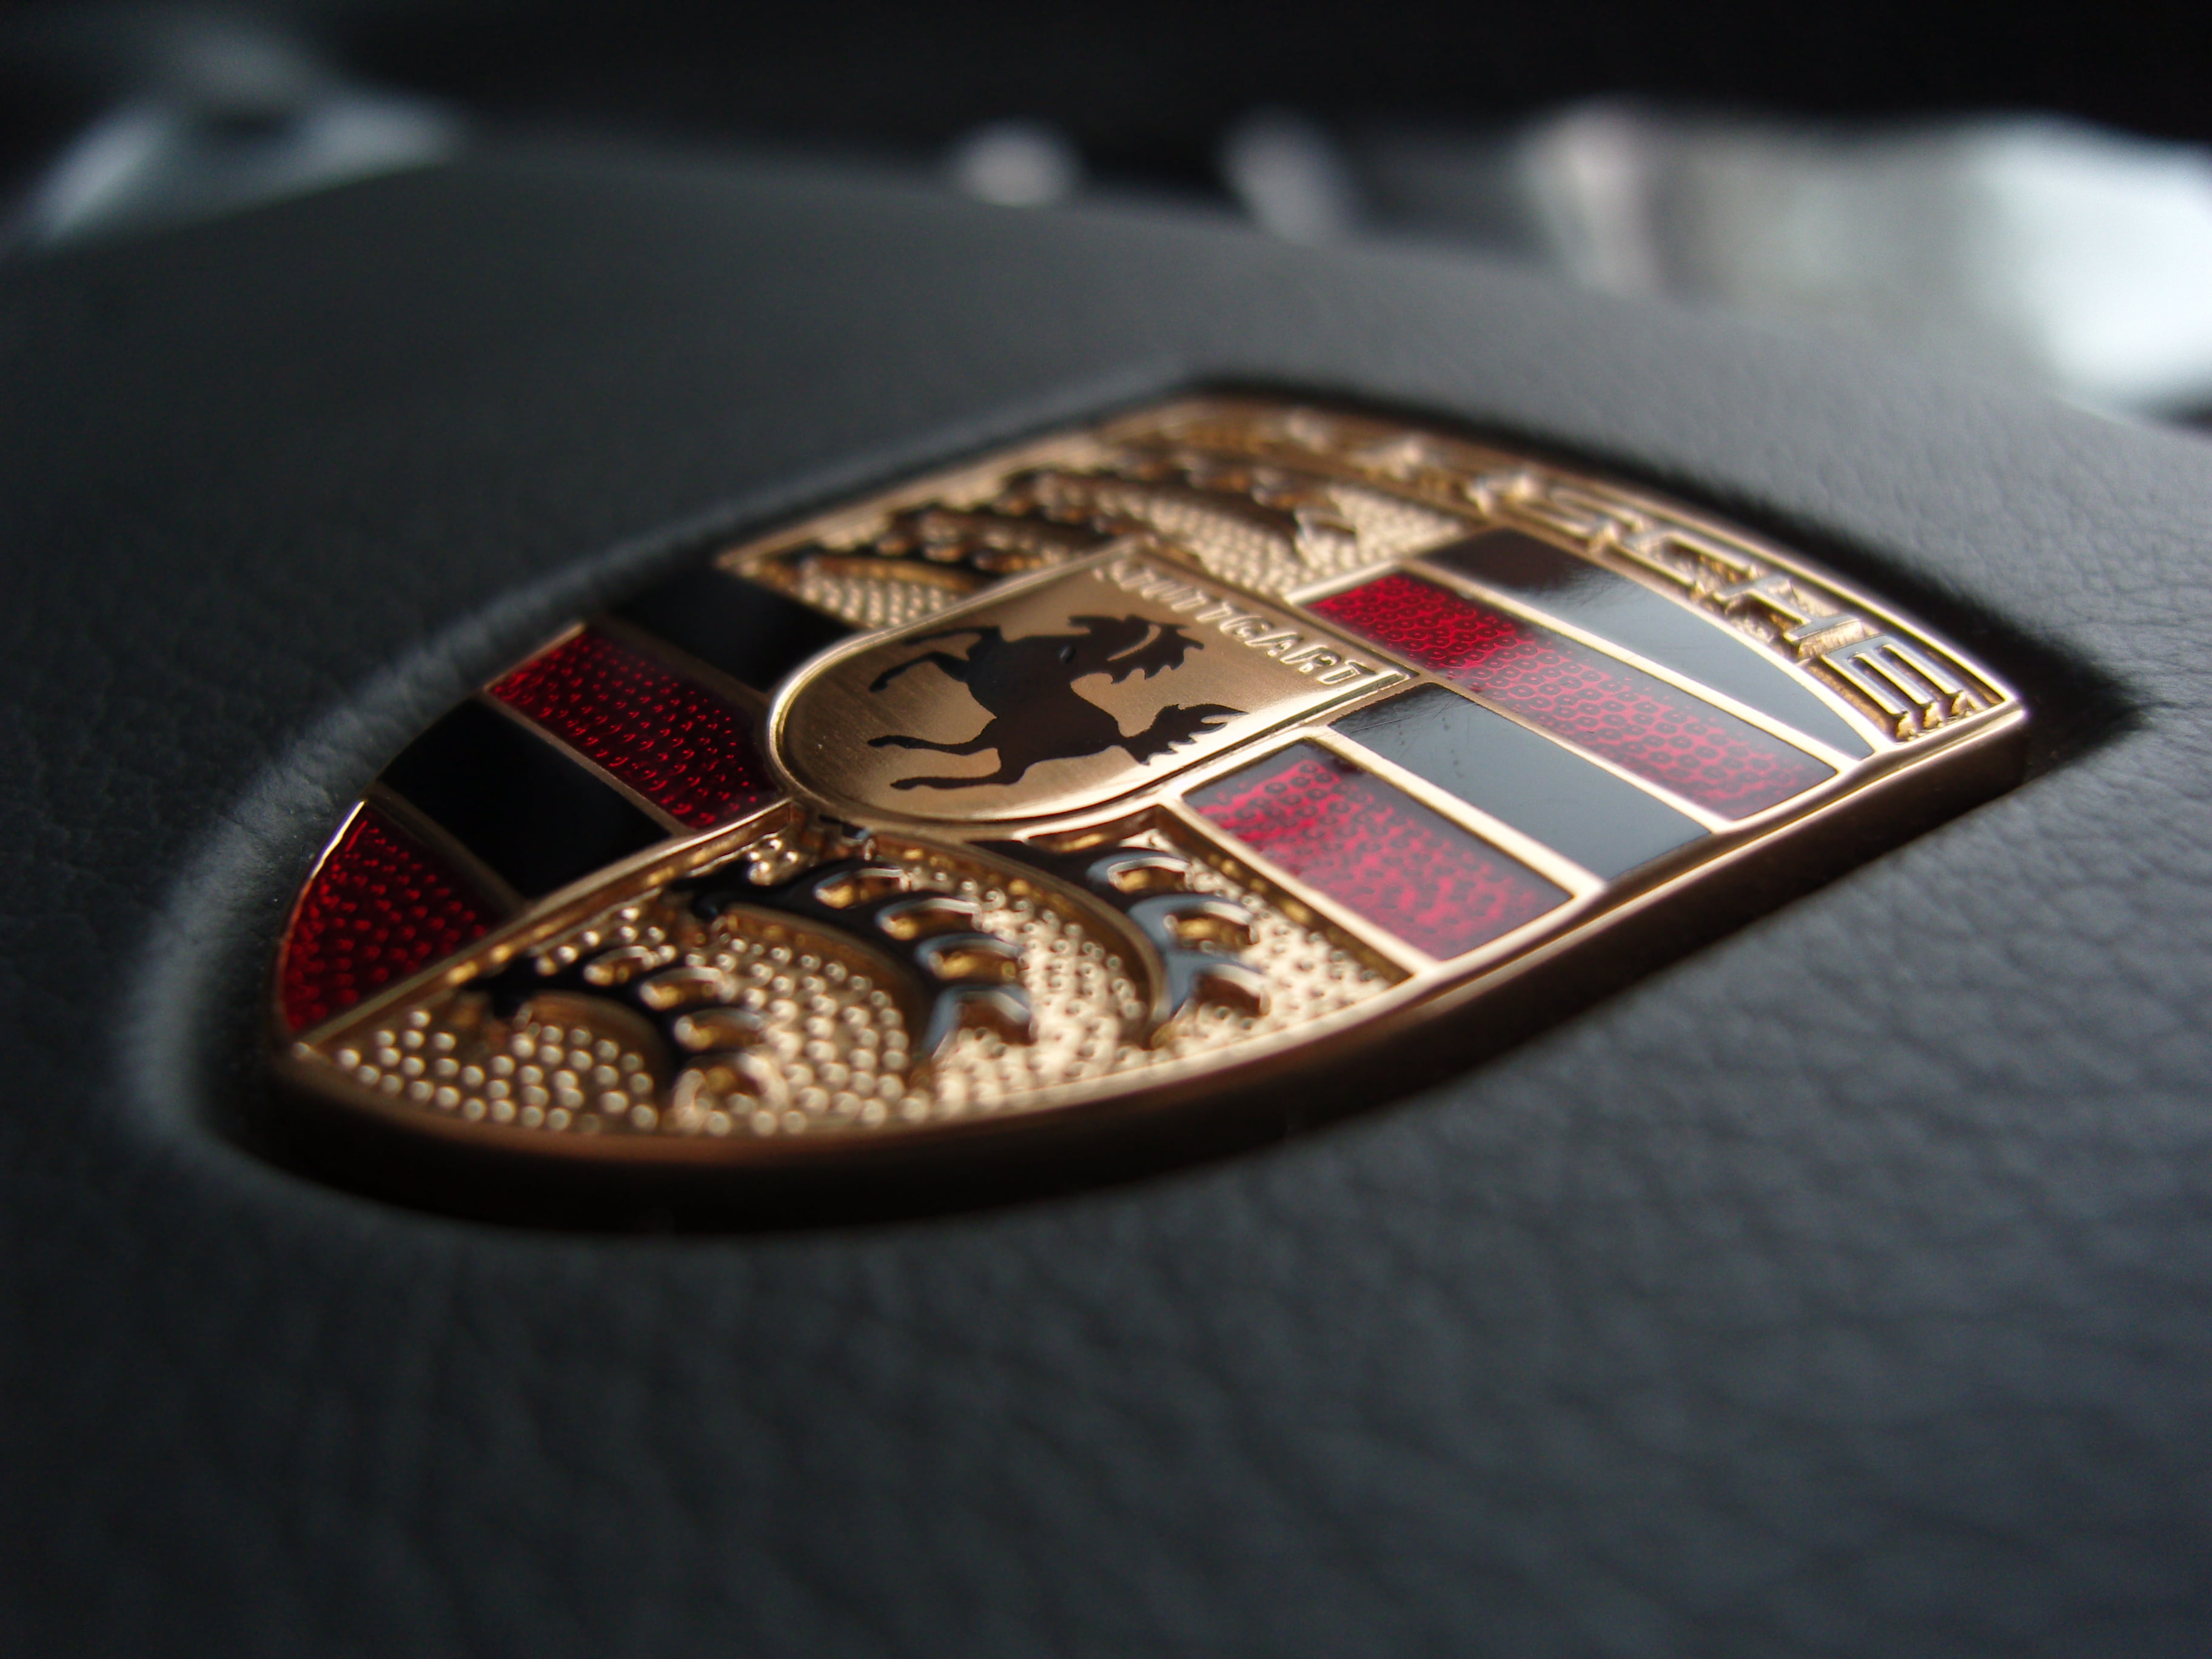 Porsche emblem macro photography